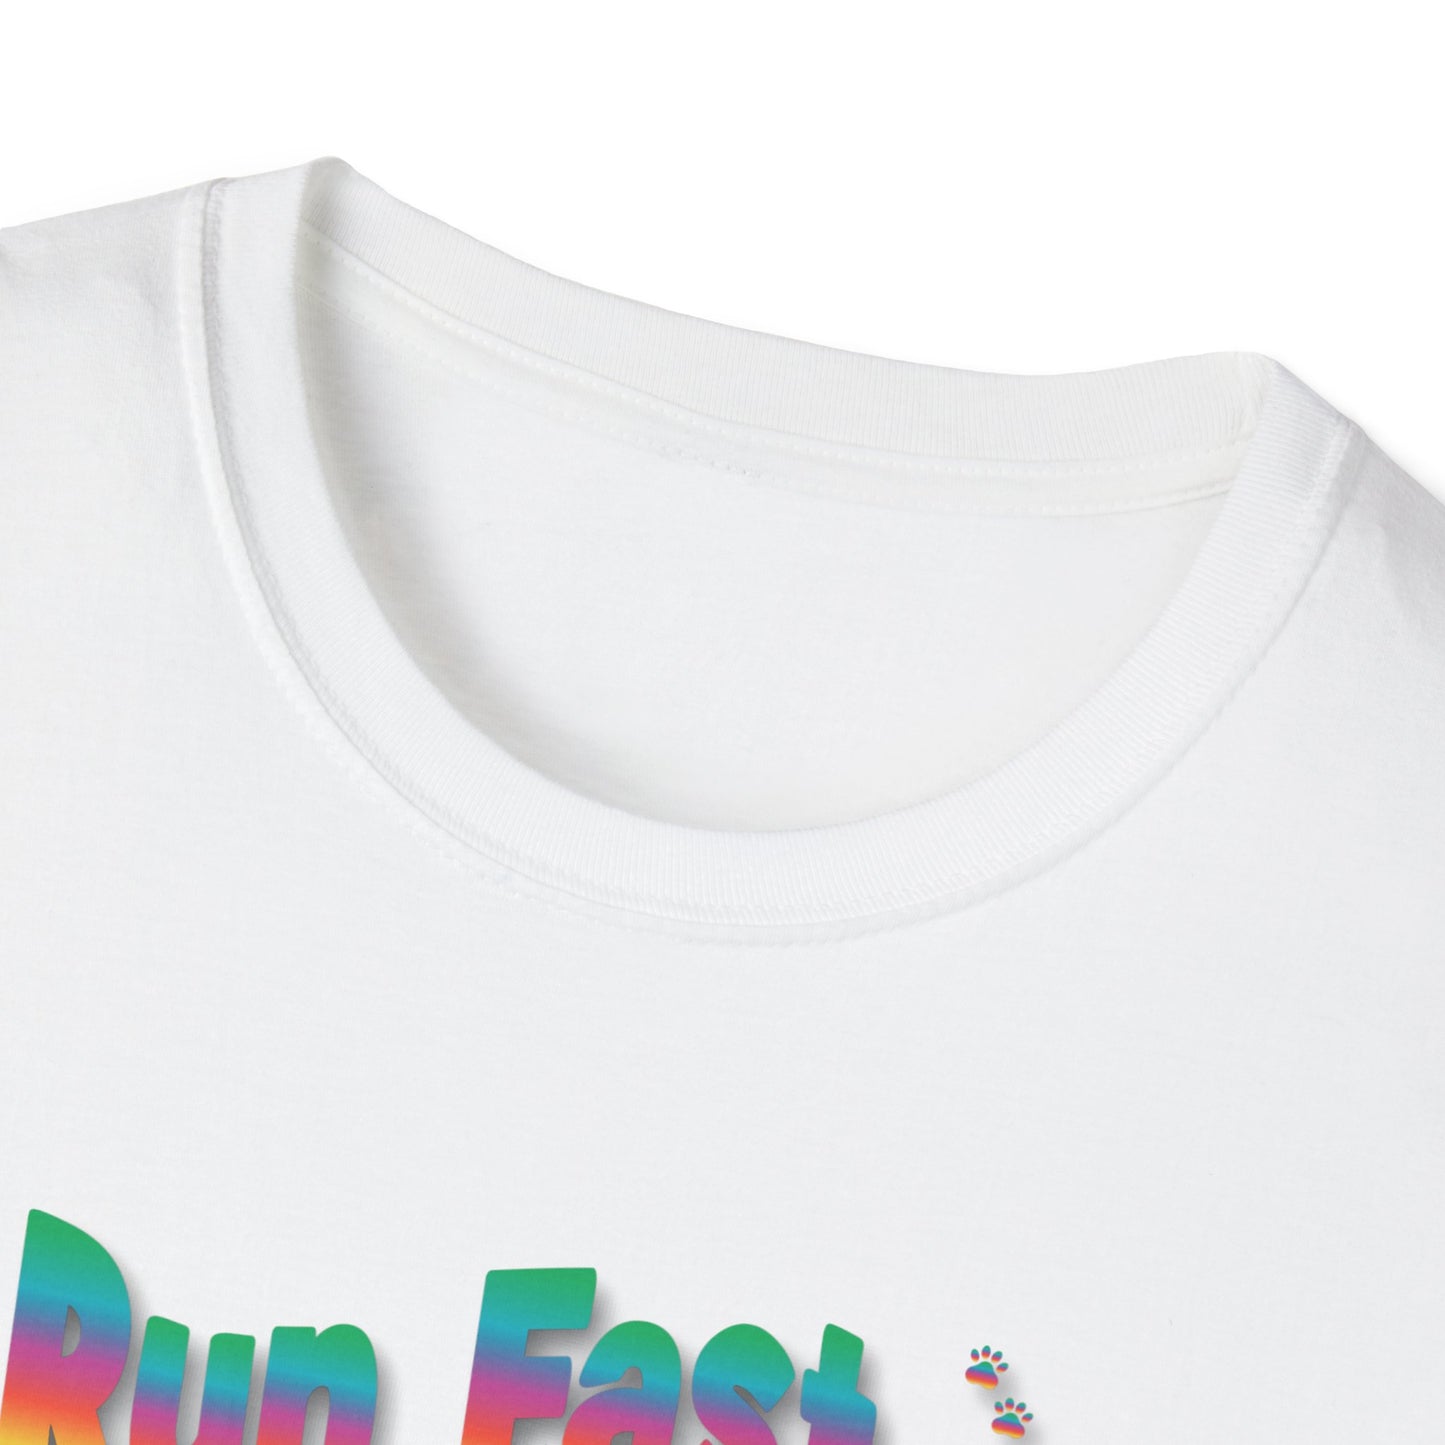 RUN FAST RUN CLEAN HAVE FUN Unisex Softstyle T-Shirt